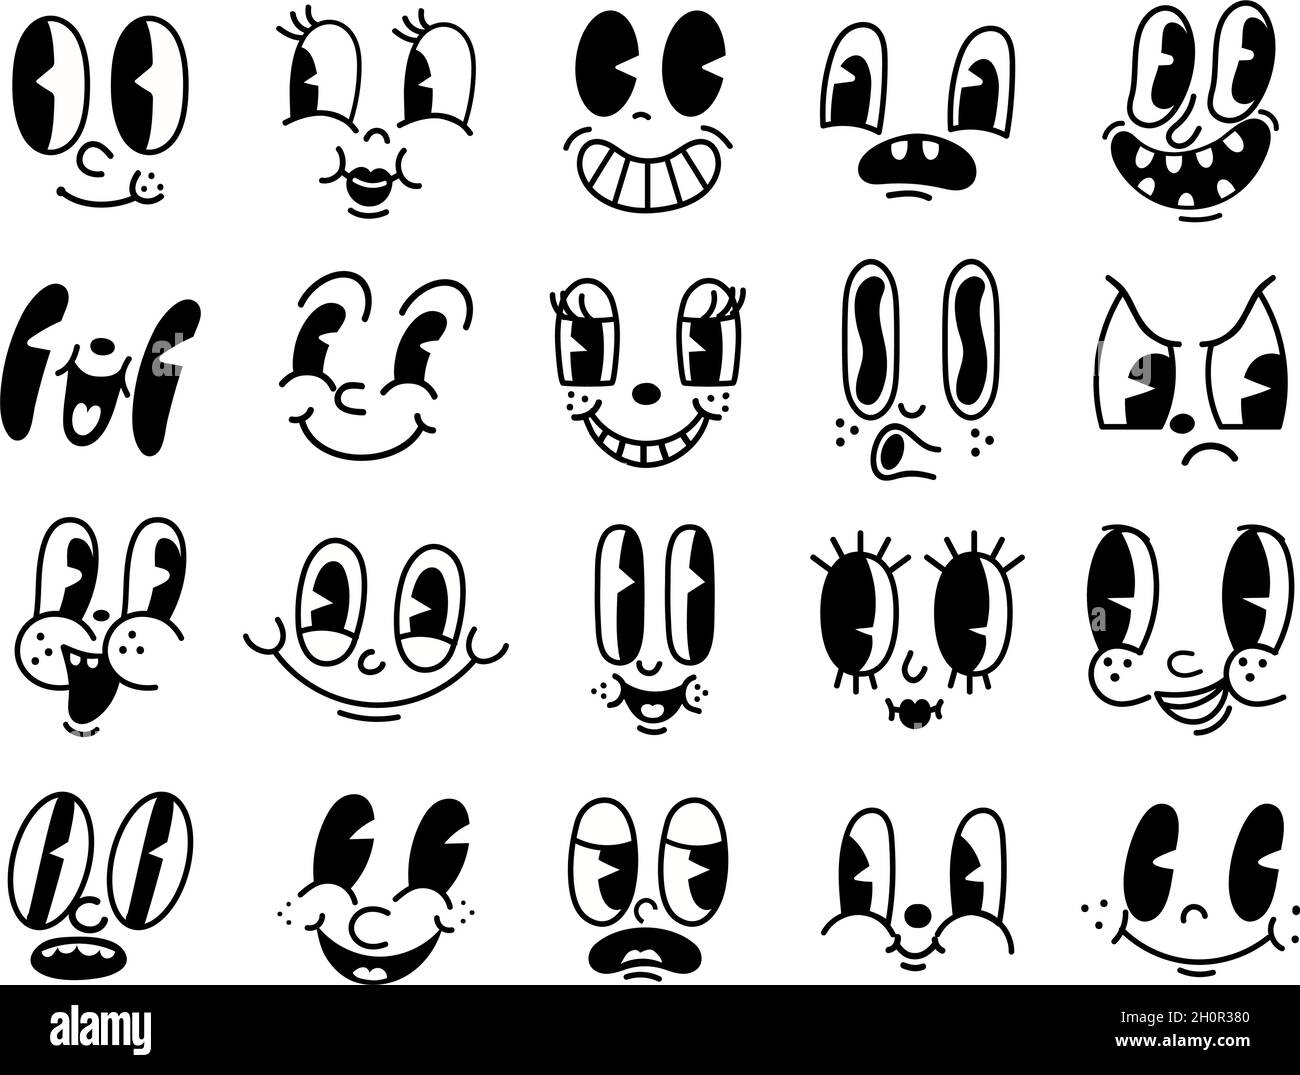 Retro 30s Cartoon Maskottchen Figuren lustige Gesichter. 50er, 60er Jahre alte Animation Augen und Mund Elemente. Vintage Comic Smile für Logo-Vektor-Set Stock Vektor